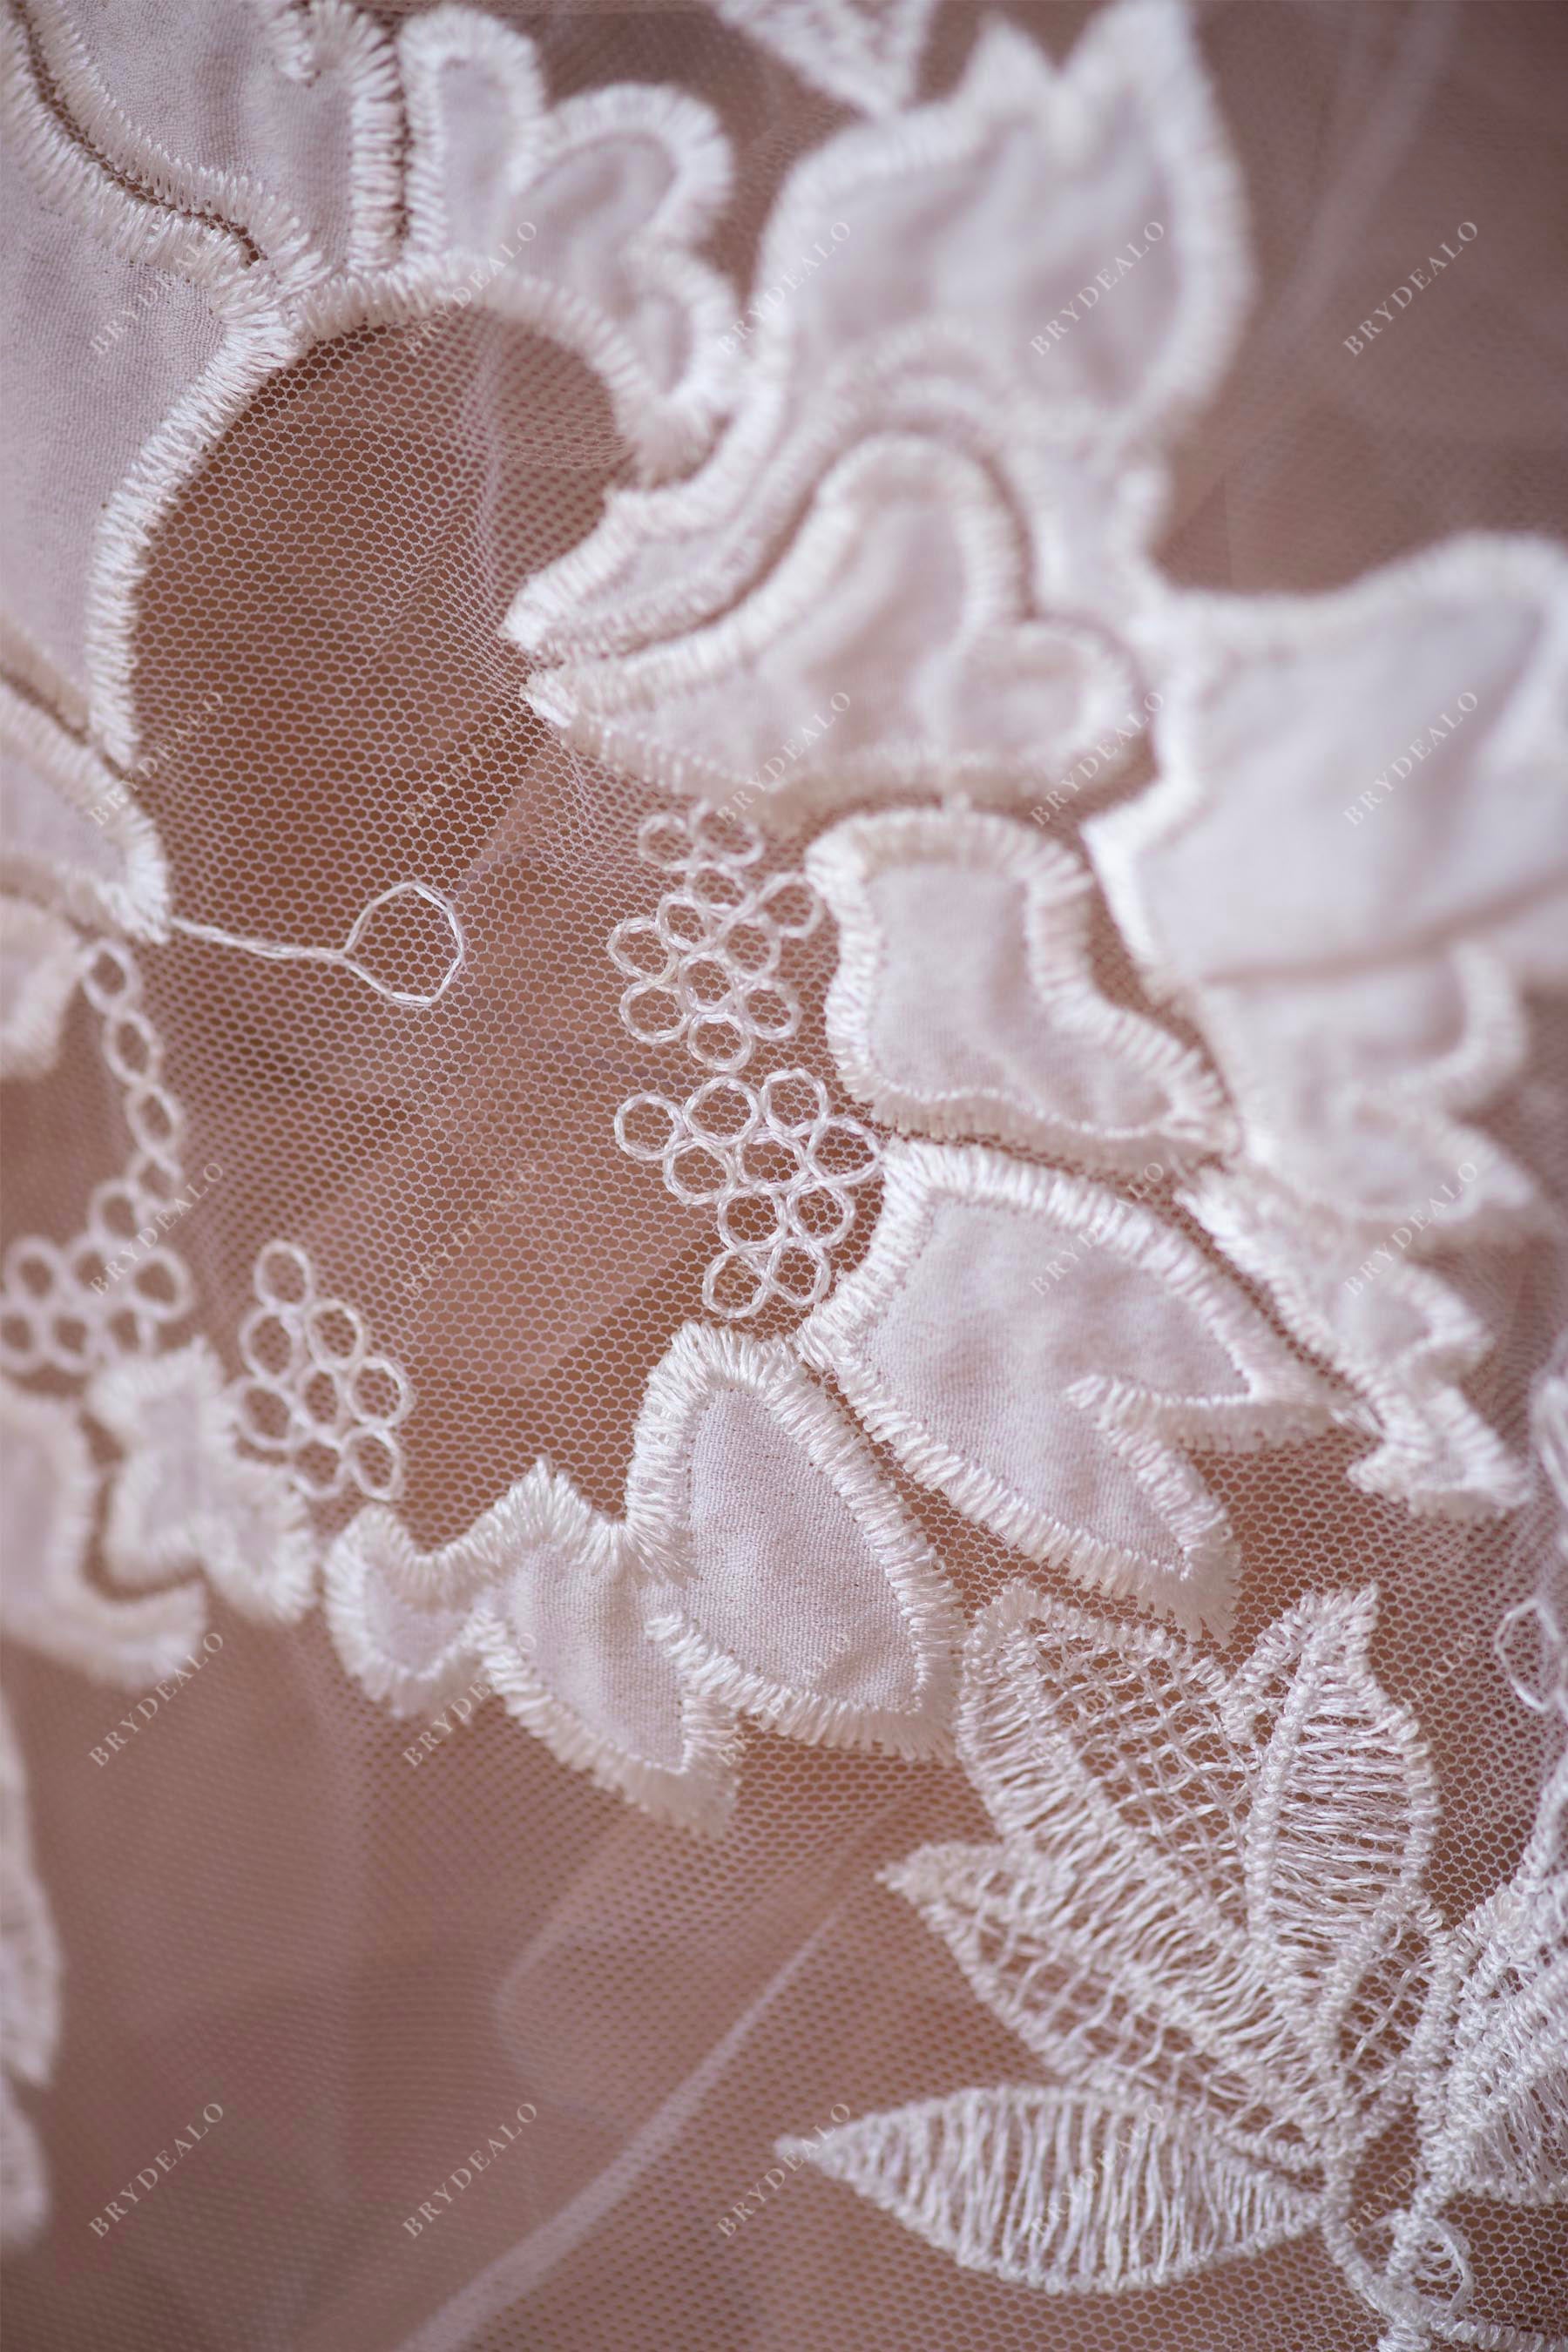 embroidery chiffon bridal lace fabric